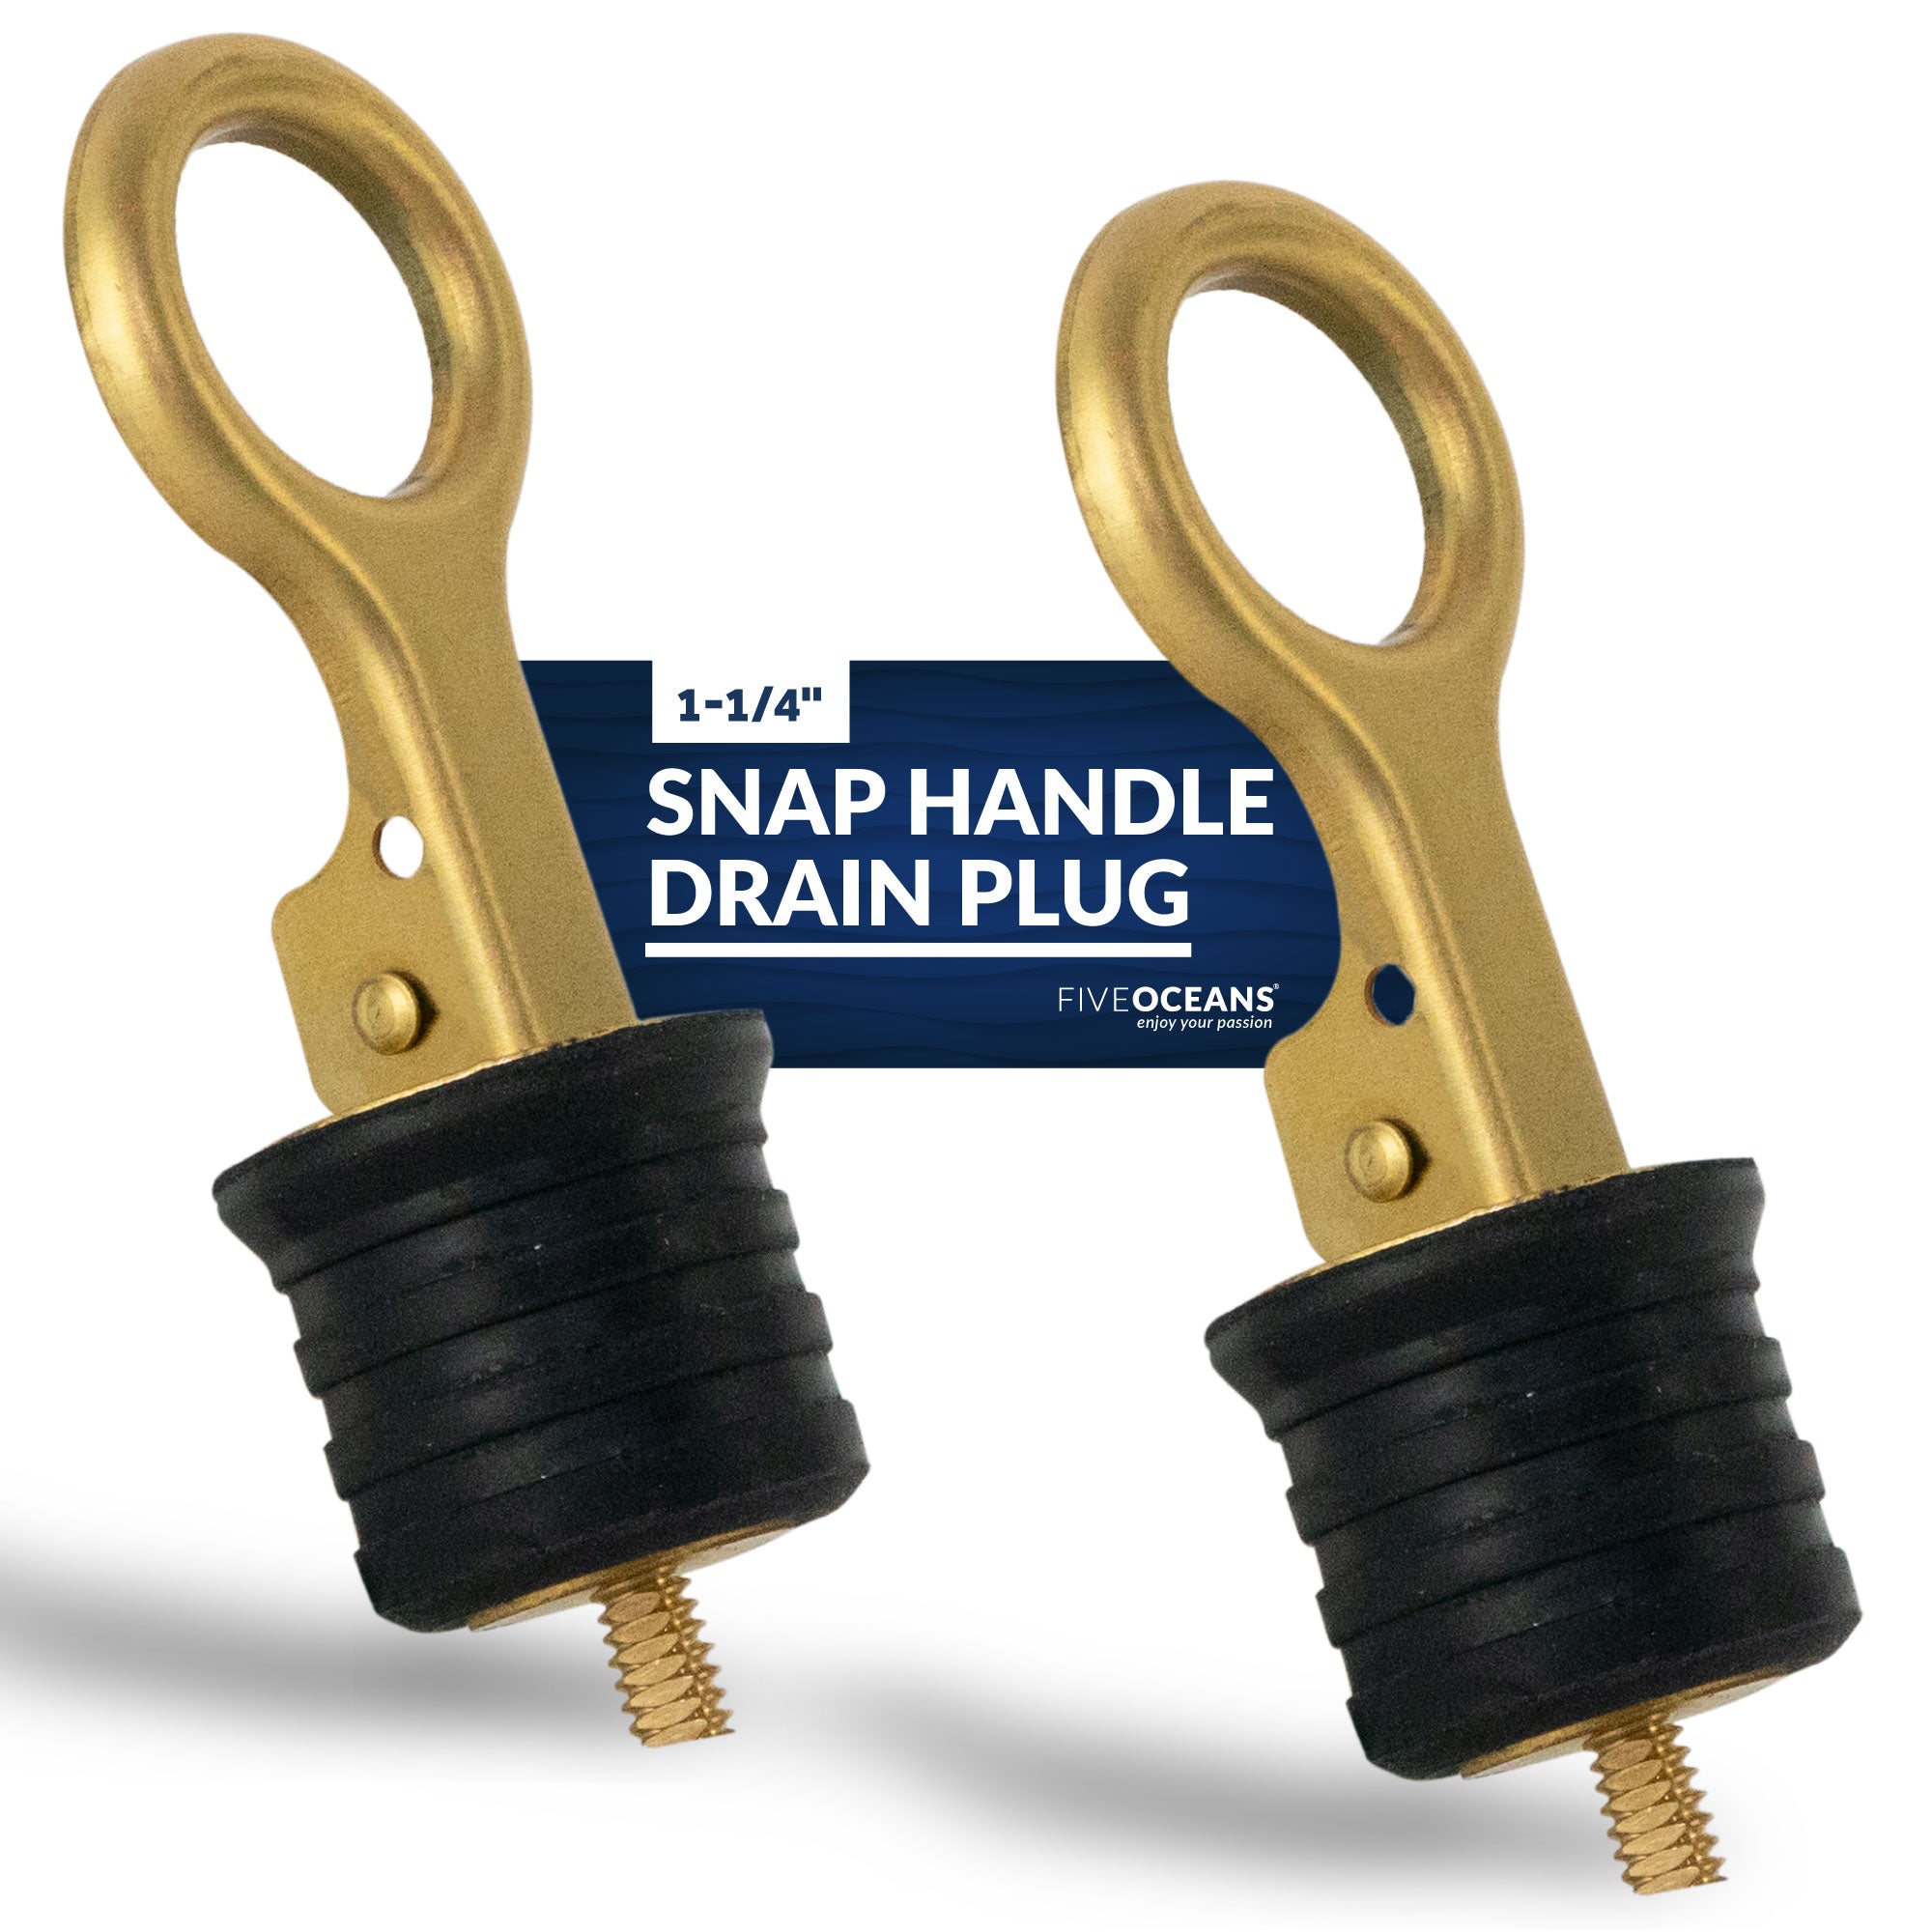 Snap-Handle Drain Plug for 1-1/4" Diameter Drains, 2-Pack - FO3834-M2